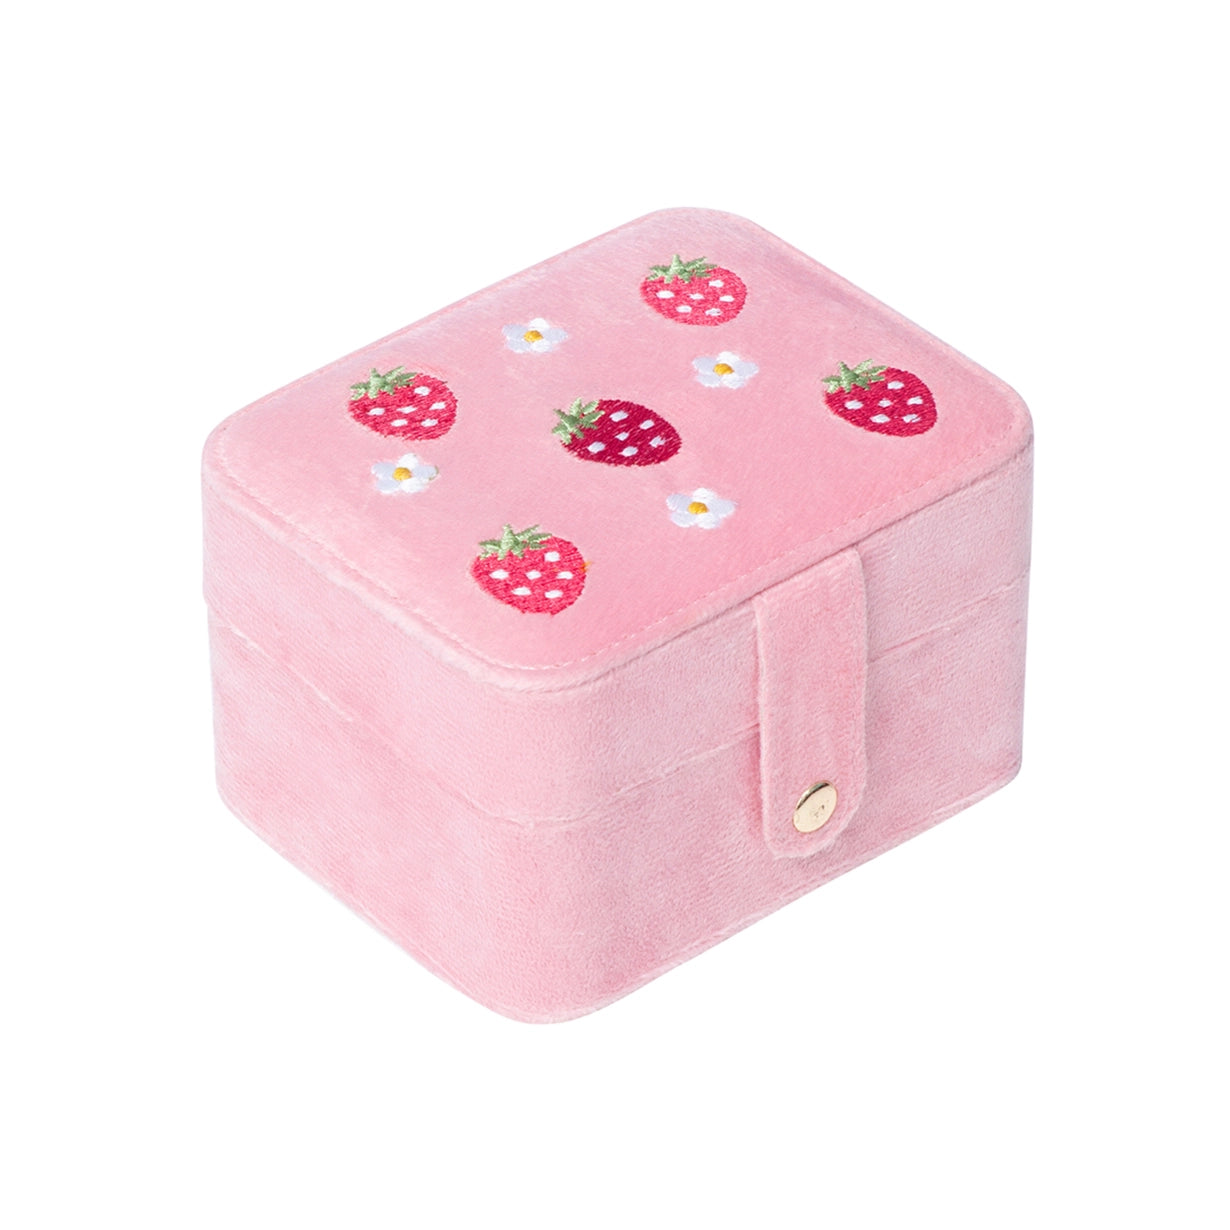 Strawberry Fields Jewelry Box